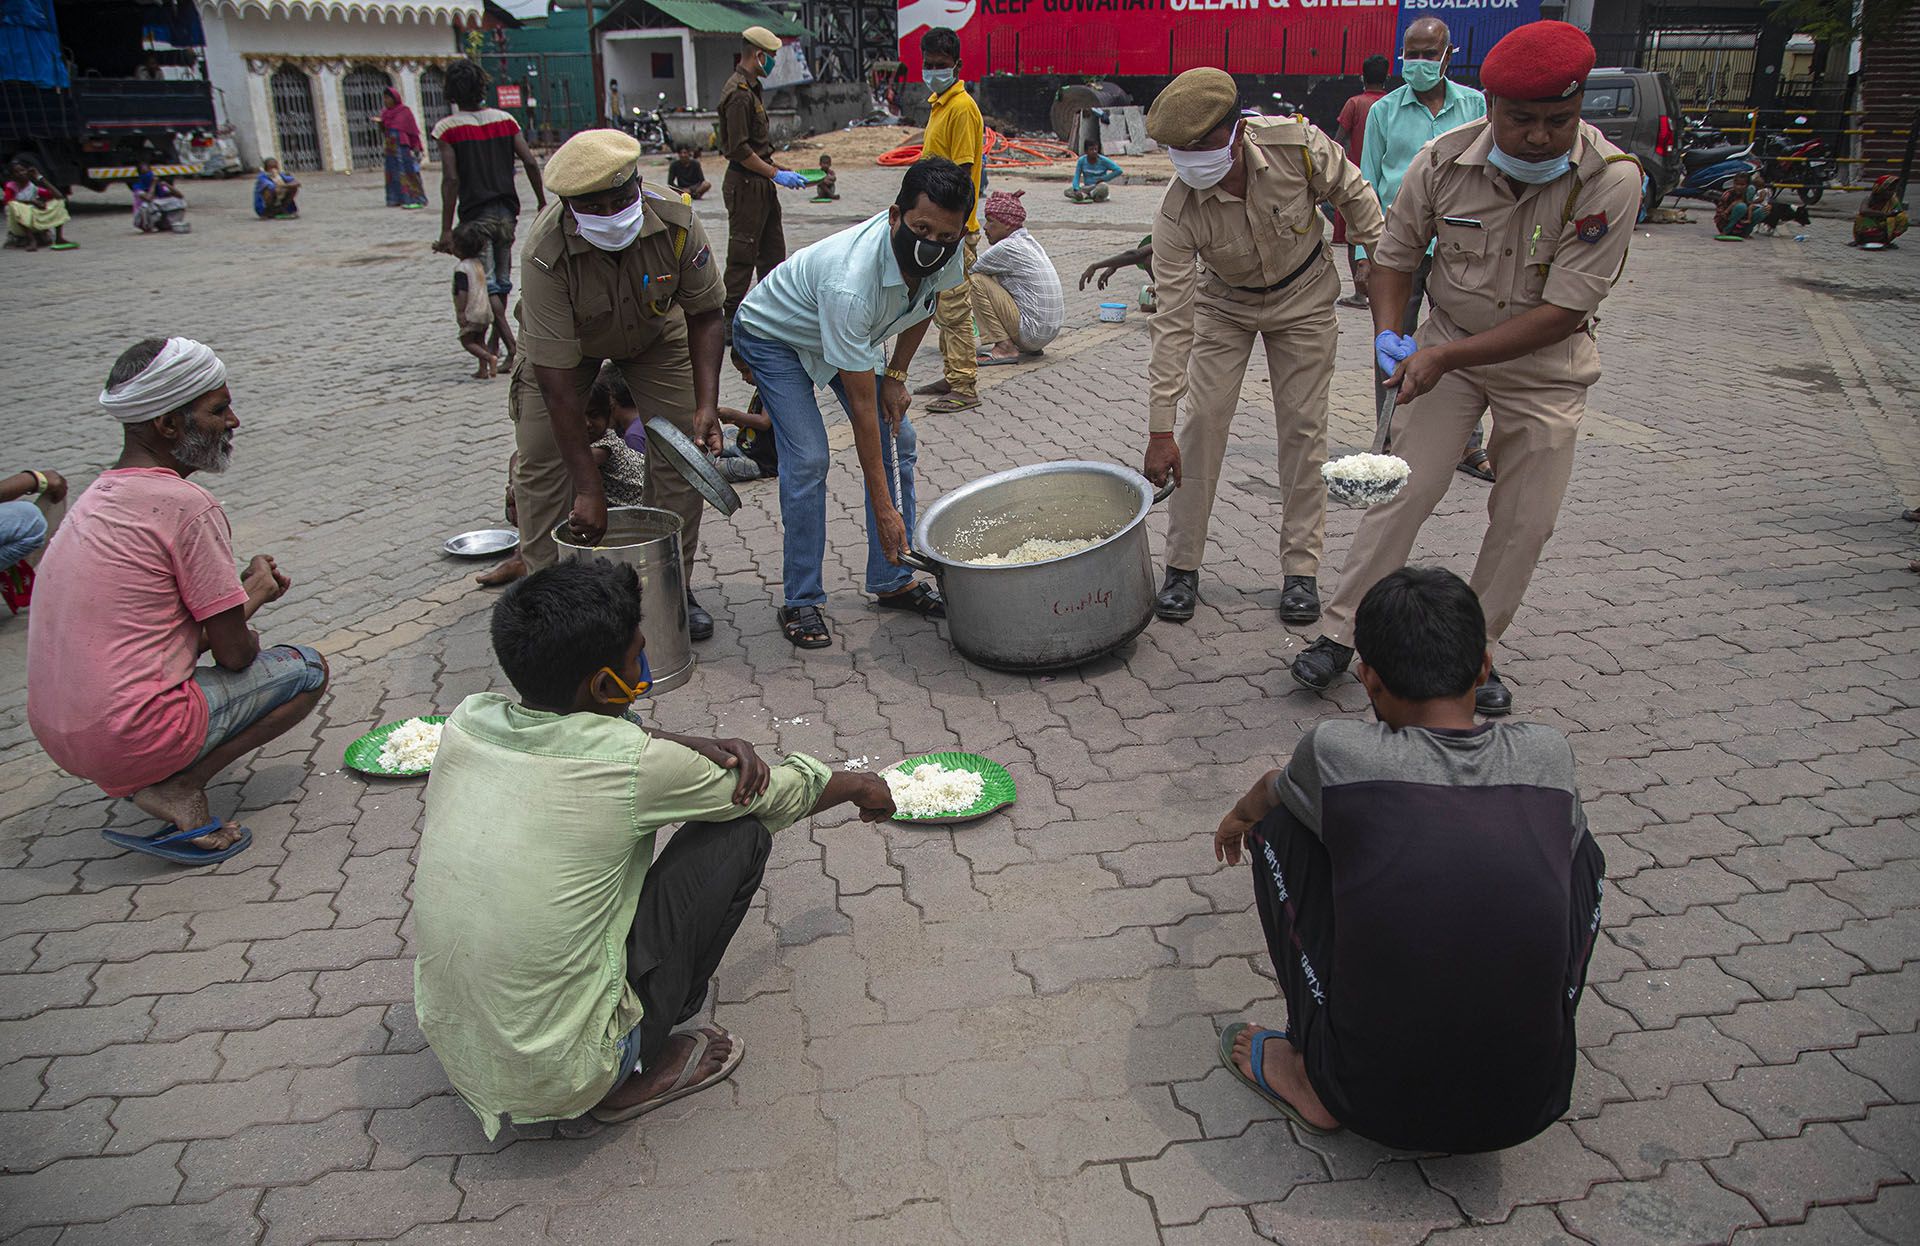 La policía distribuye alimentos gratuitos a las personas sin hogar durante el cierre nacional en Gauhati, India, el jueves 23 de abril de 2020 (AP Photo/Anupam Nath)